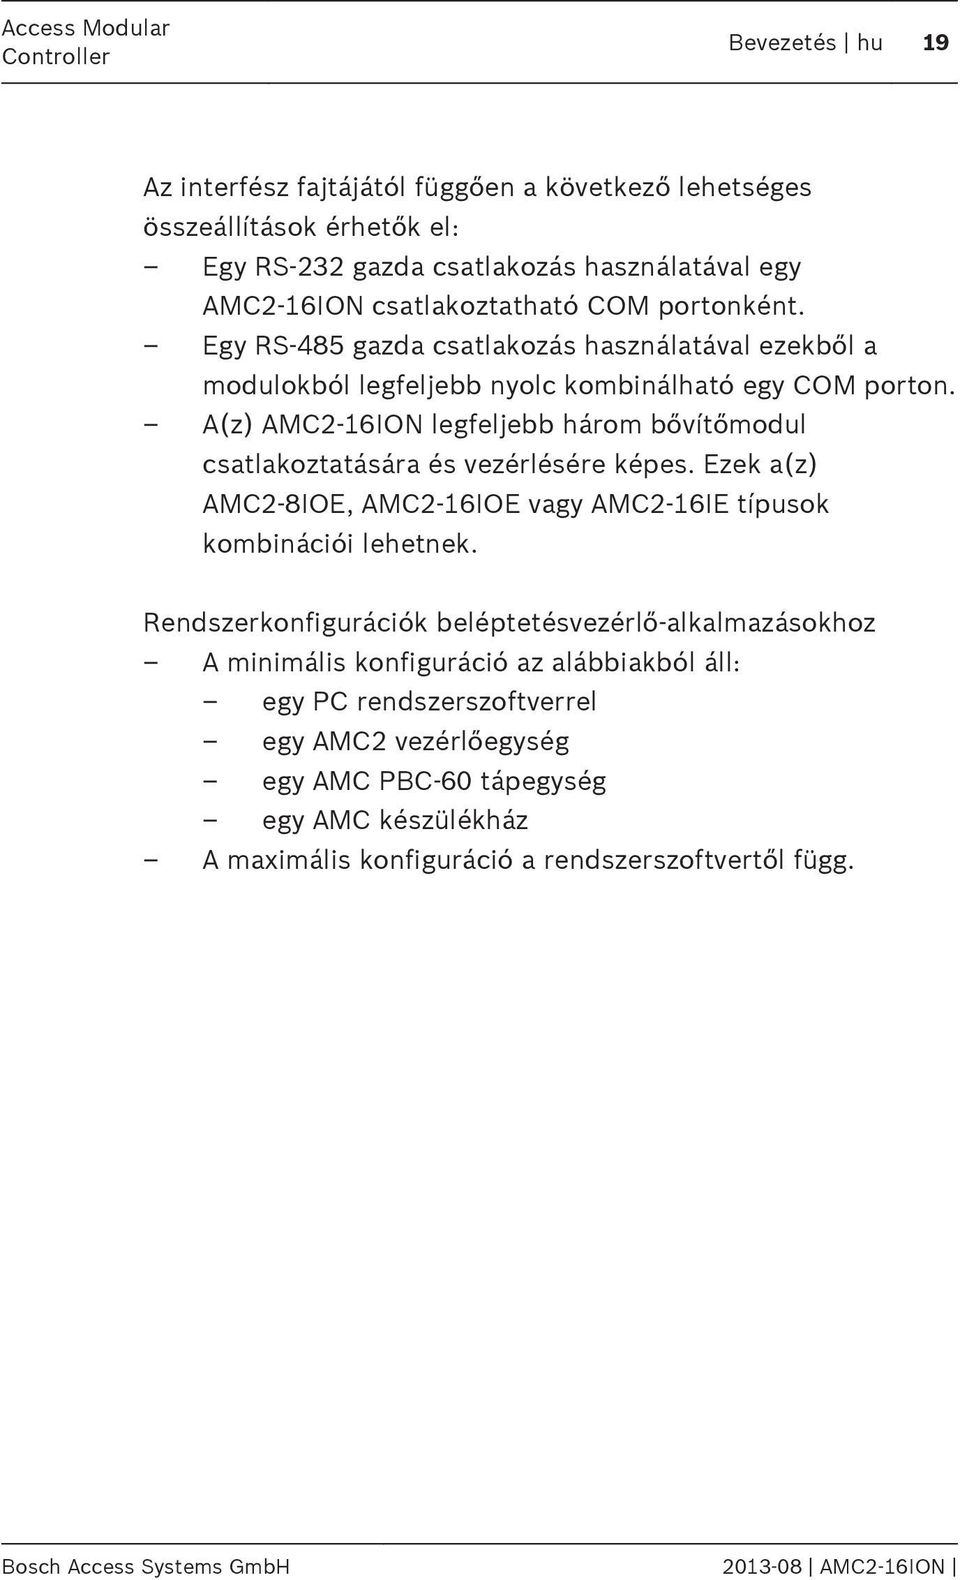 A(z) AMC2-16ION legfeljebb három bővítőmodul csatlakoztatására és vezérlésére képes. Ezek a(z) AMC2-8IOE, AMC2-16IOE vagy AMC2-16IE típusok kombinációi lehetnek.